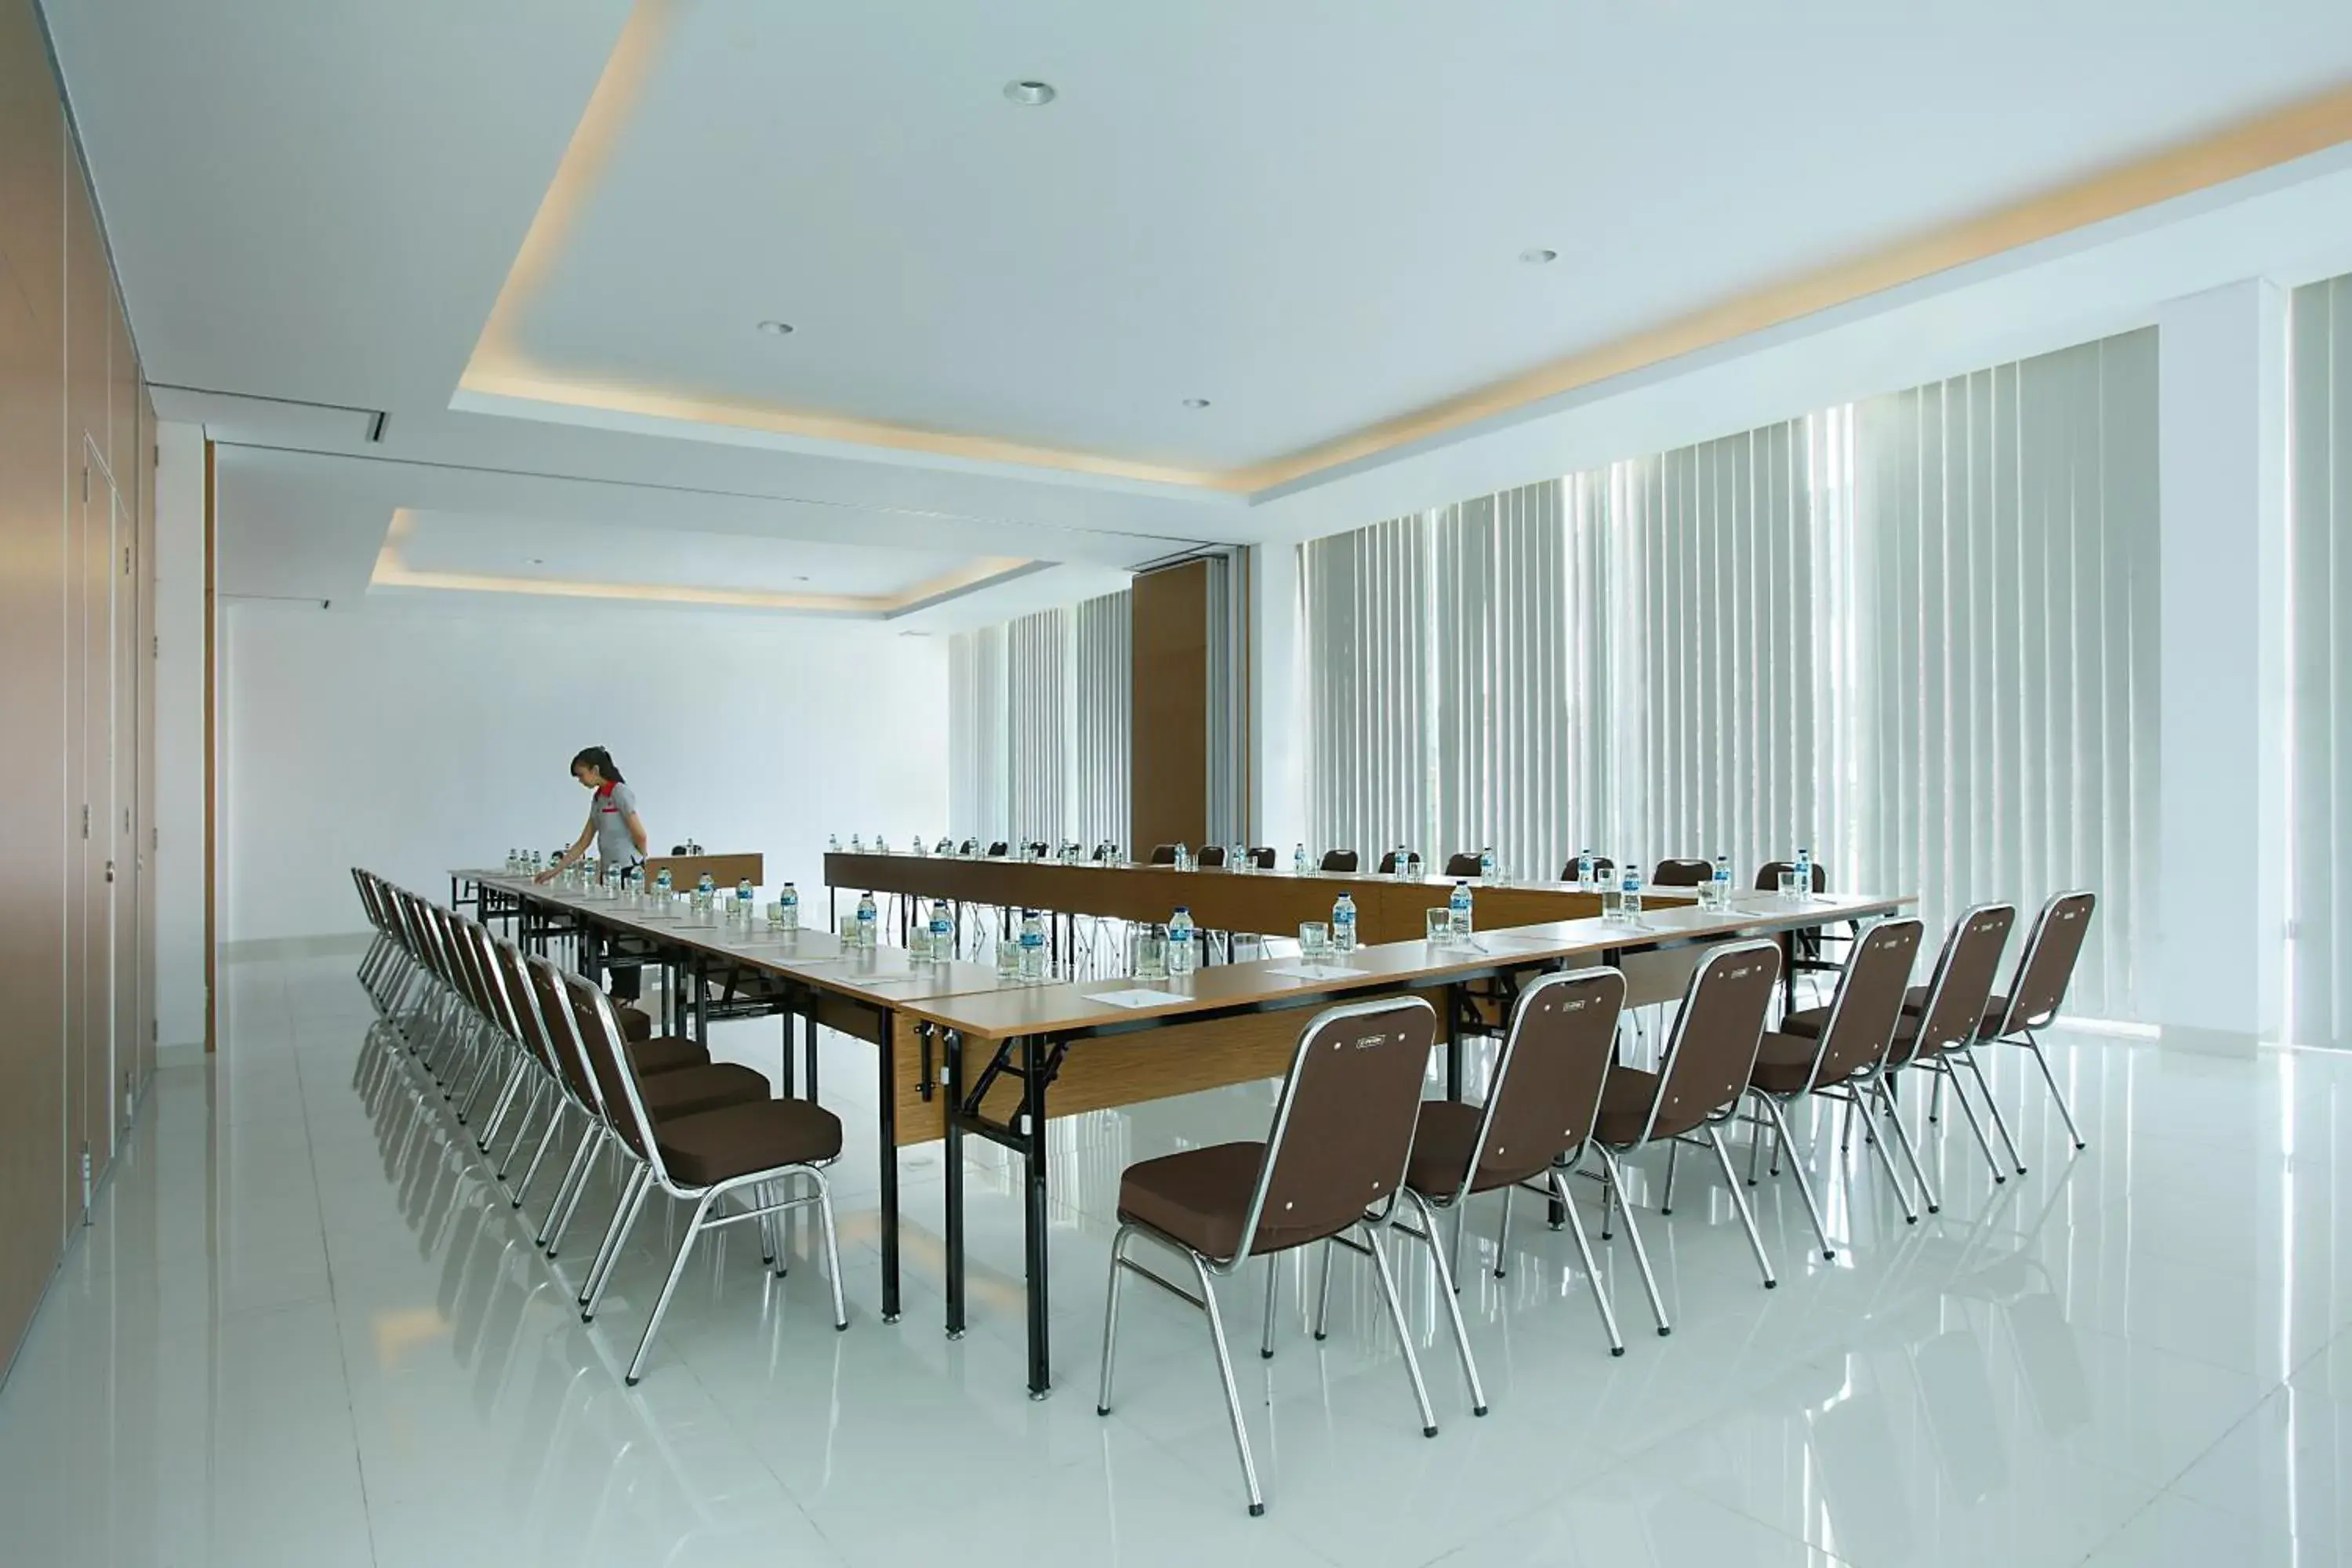 Meeting/conference room in Amaris Hotel Embong Malang - Surabaya